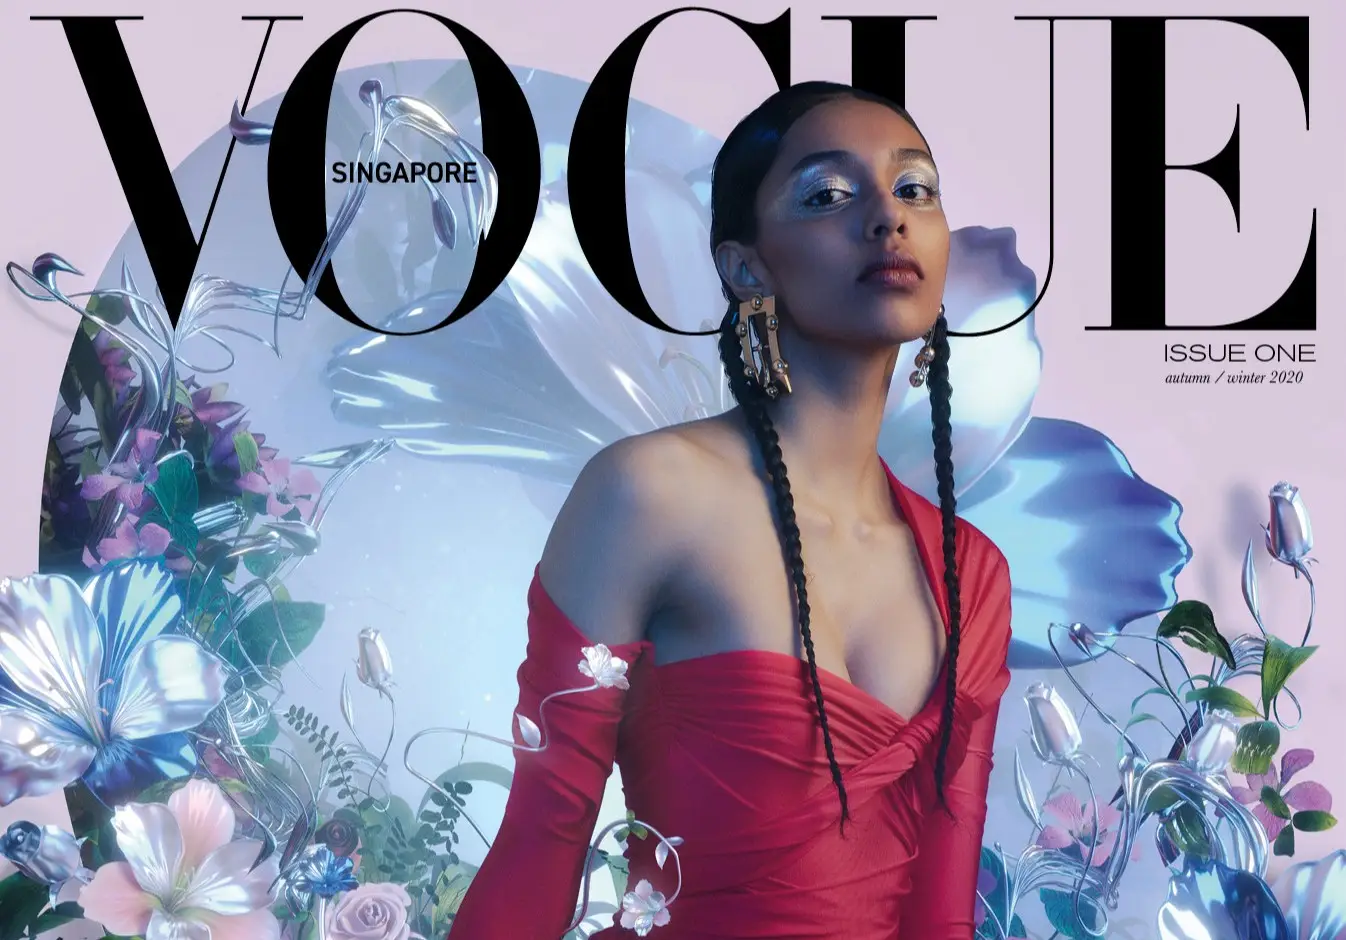 As duas razões que levaram a revista Vogue a ser penalizada em Singapura